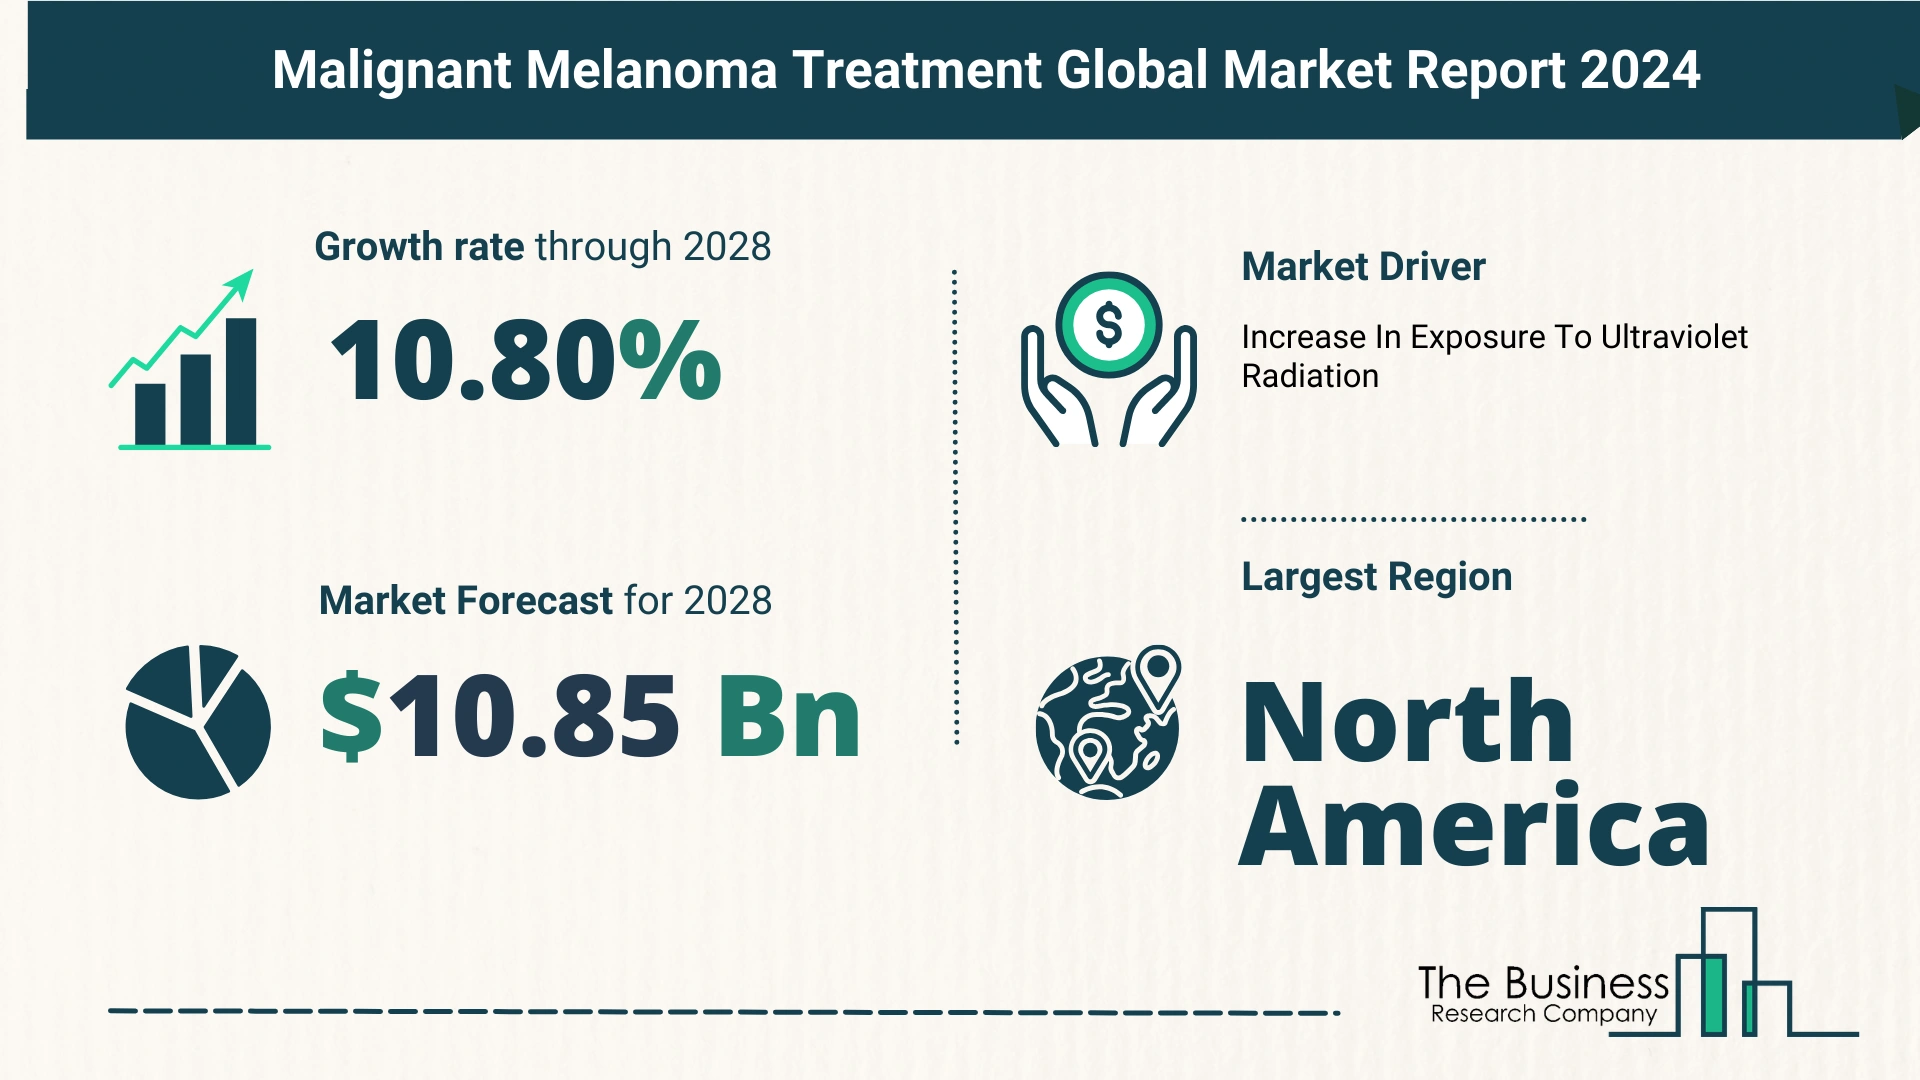 Global Malignant Melanoma Treatment Market